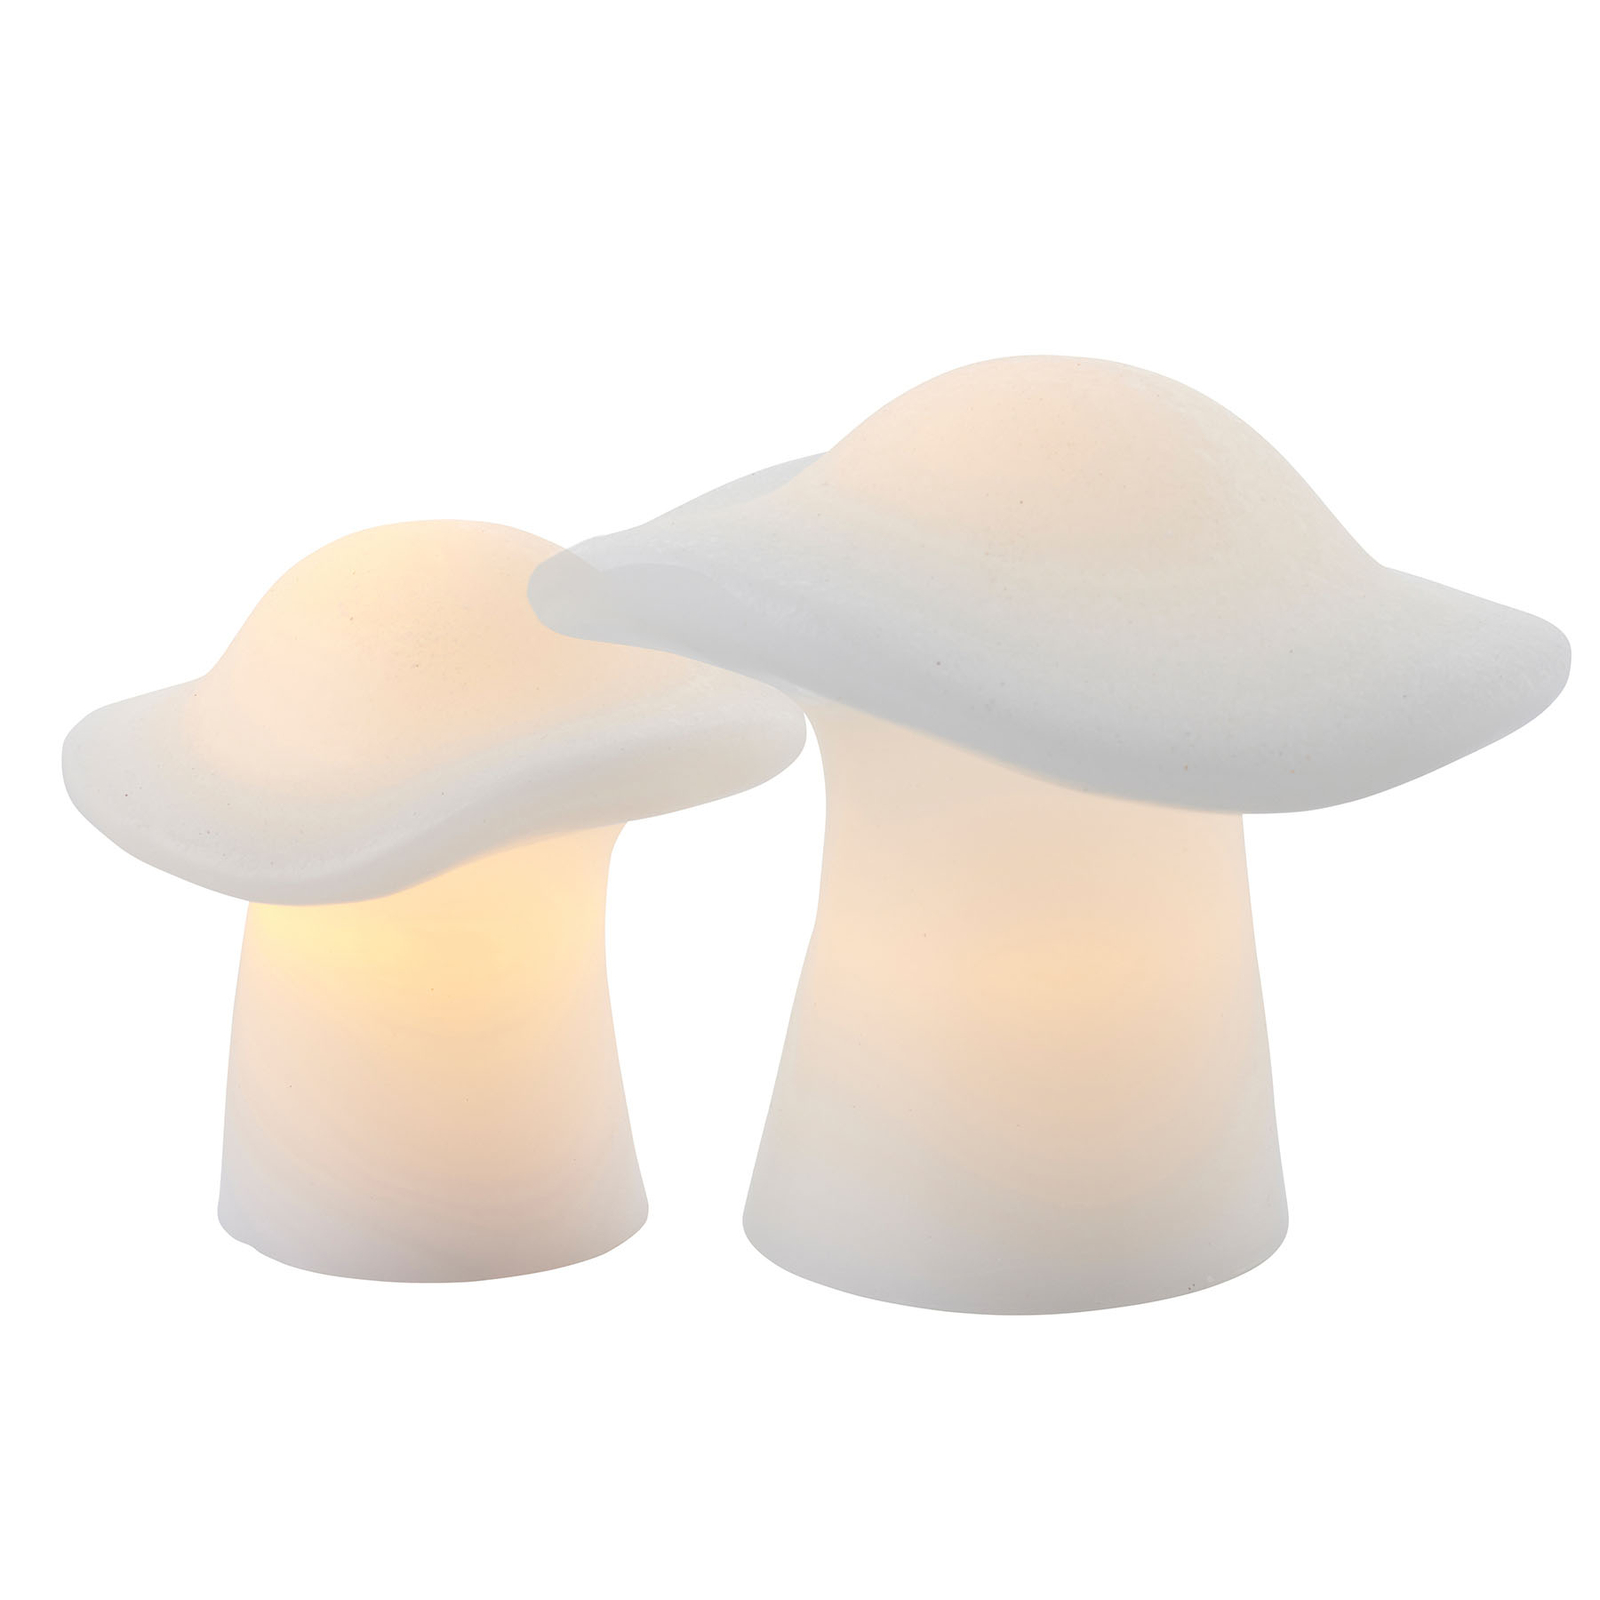 LED decorative light Mushroom set of 2